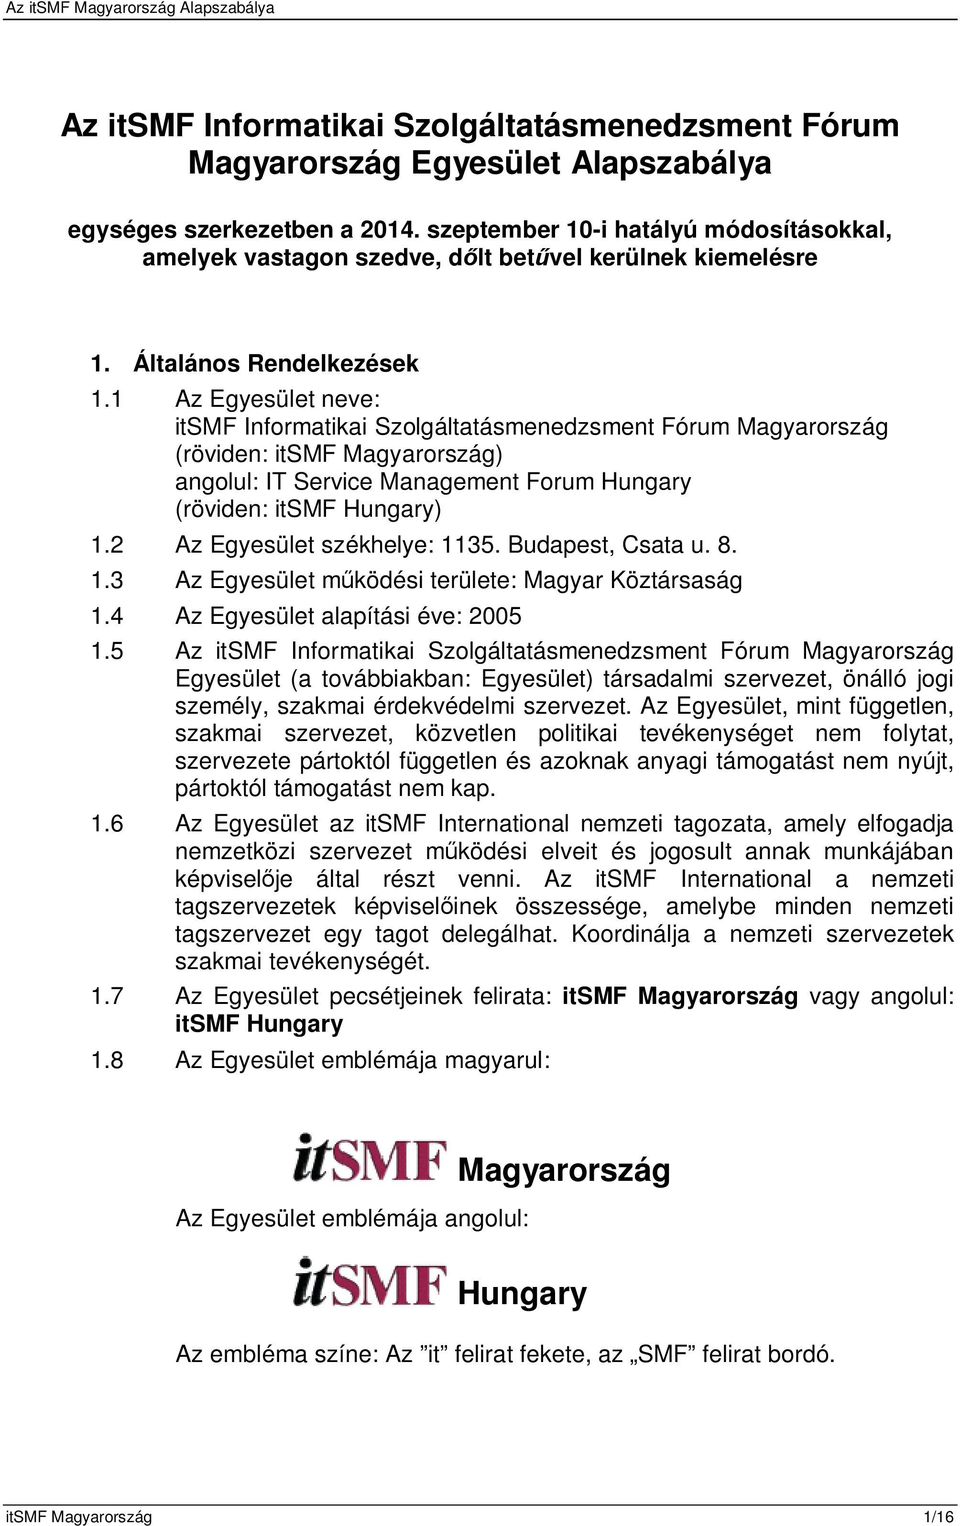 1 Az Egyesület neve: itsmf Informatikai Szolgáltatásmenedzsment Fórum Magyarország (röviden: itsmf Magyarország) angolul: IT Service Management Forum Hungary (röviden: itsmf Hungary) 1.